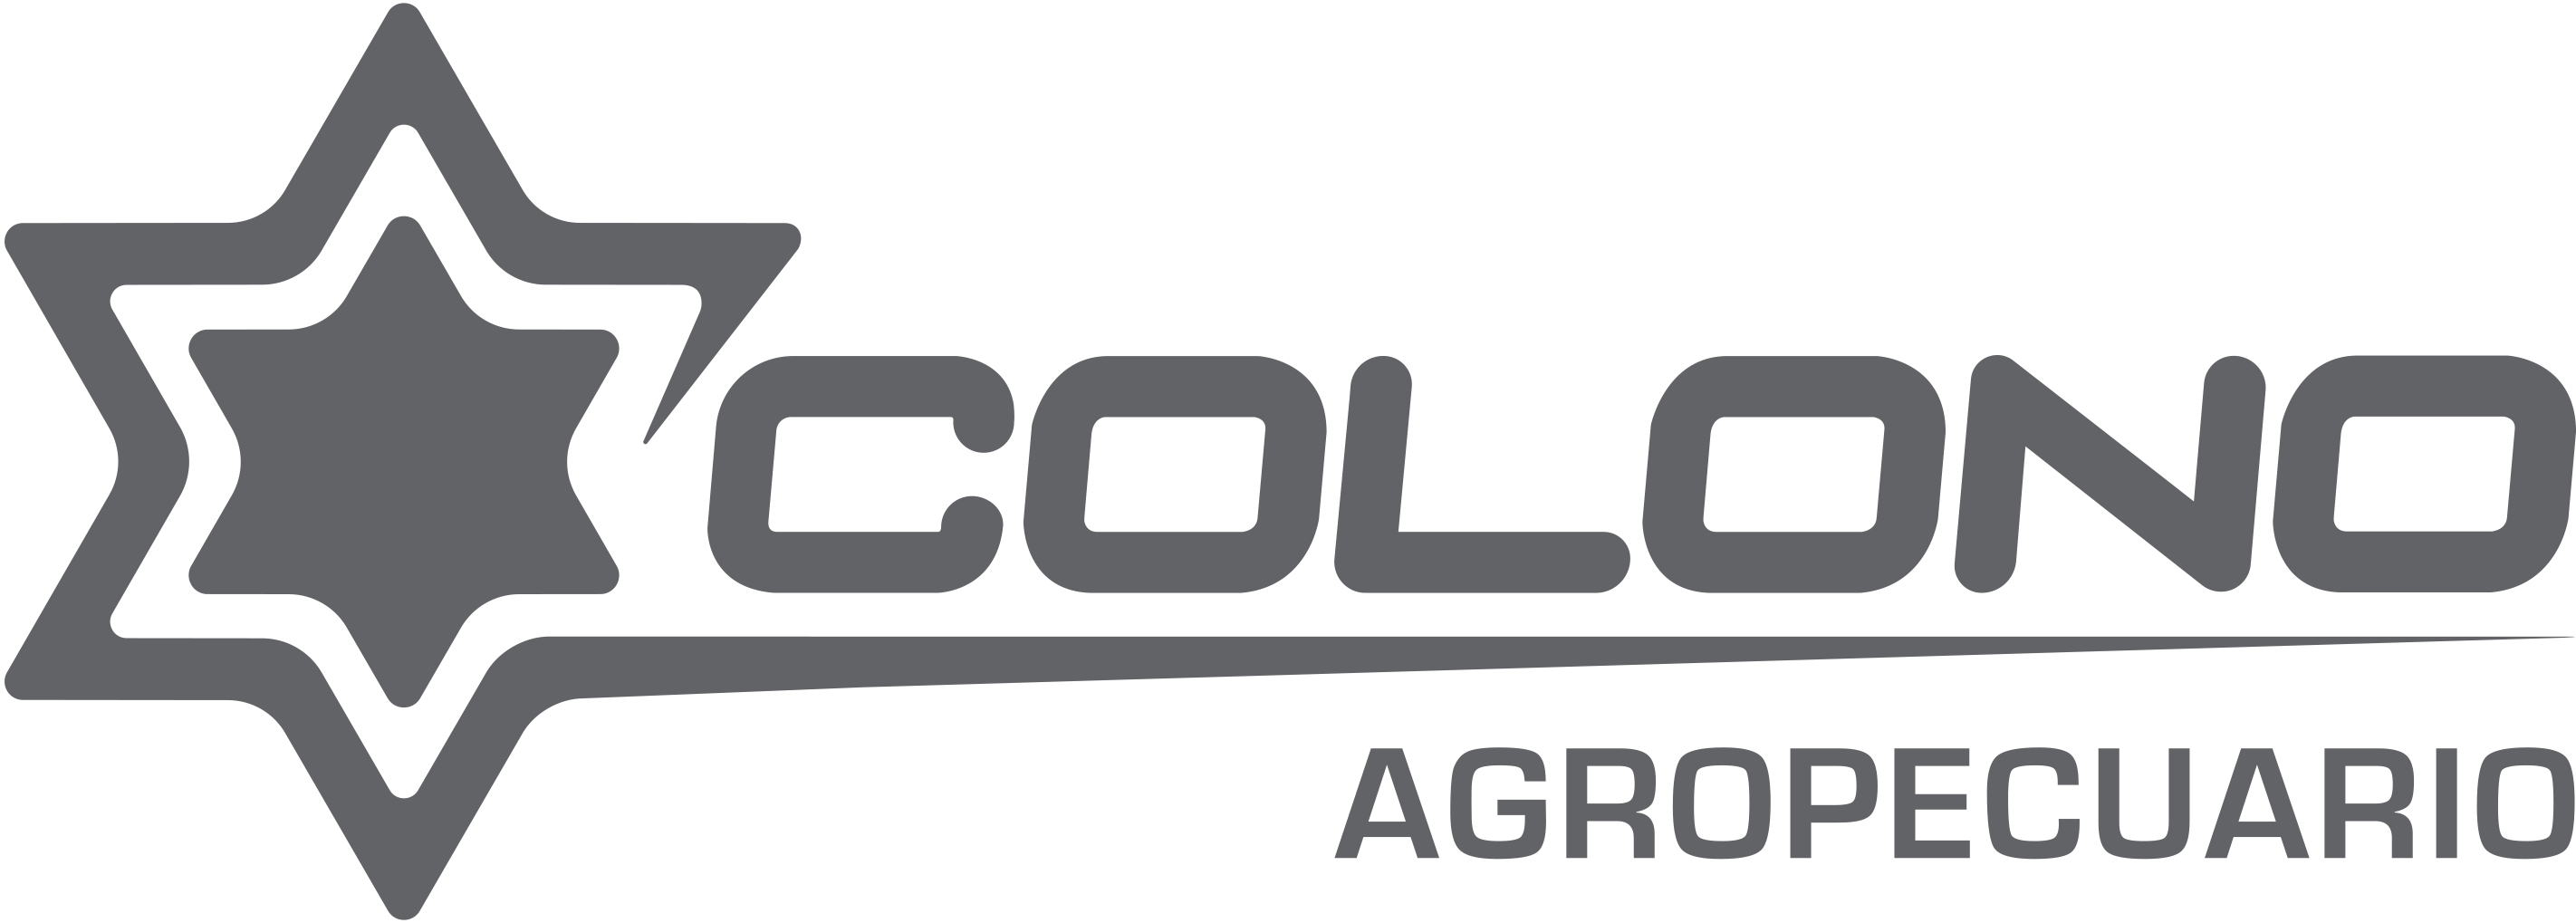 Logo de Colono Agropecuario Corporativo